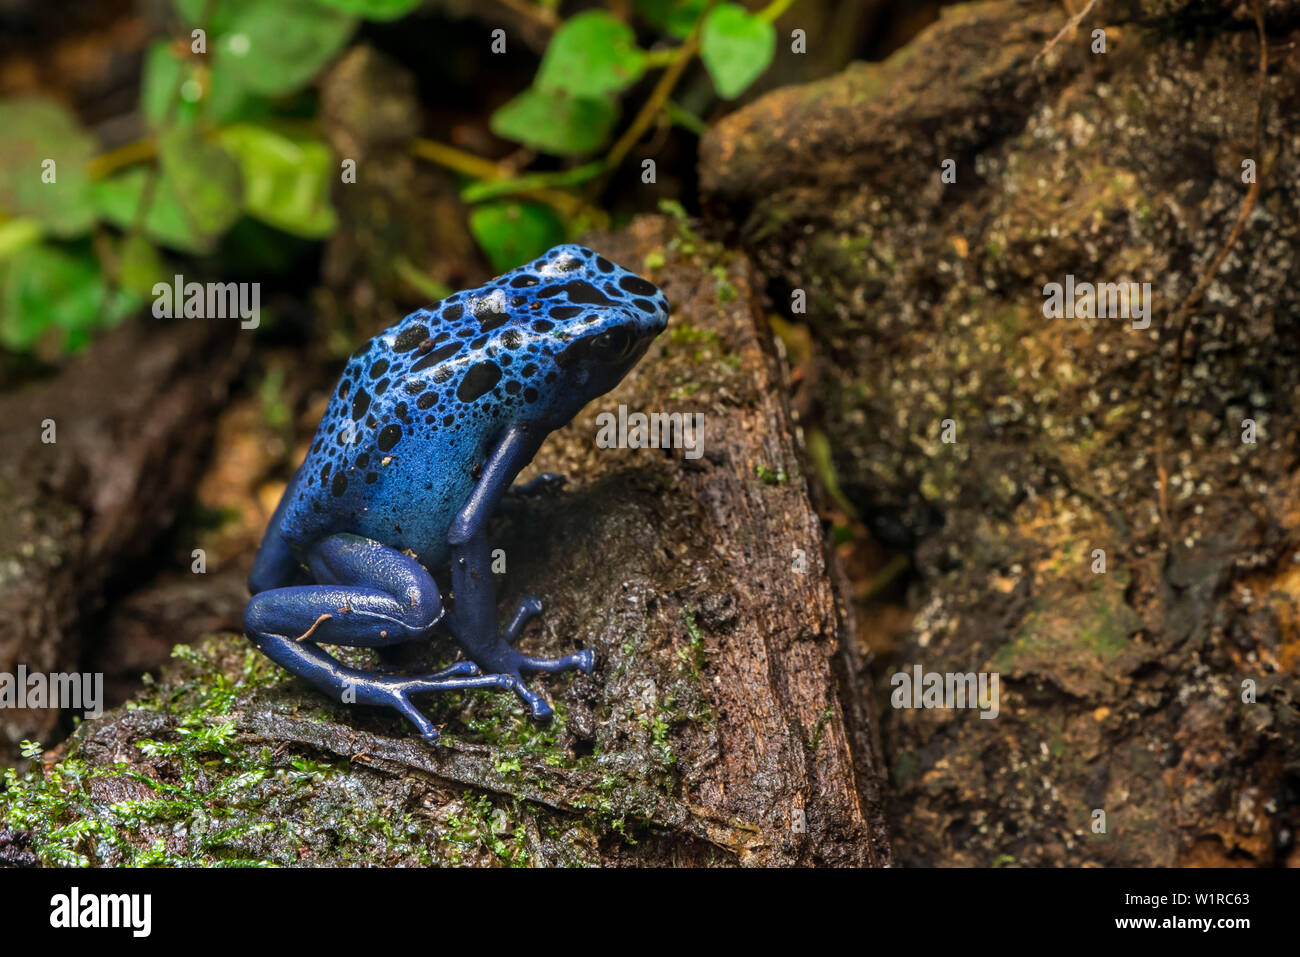 Blue poison dart frog / blue poison arrow frog / okopipi Dendrobates tinctorius (Azureus) indigène aux forêts tropicales au Suriname et au Brésil Banque D'Images